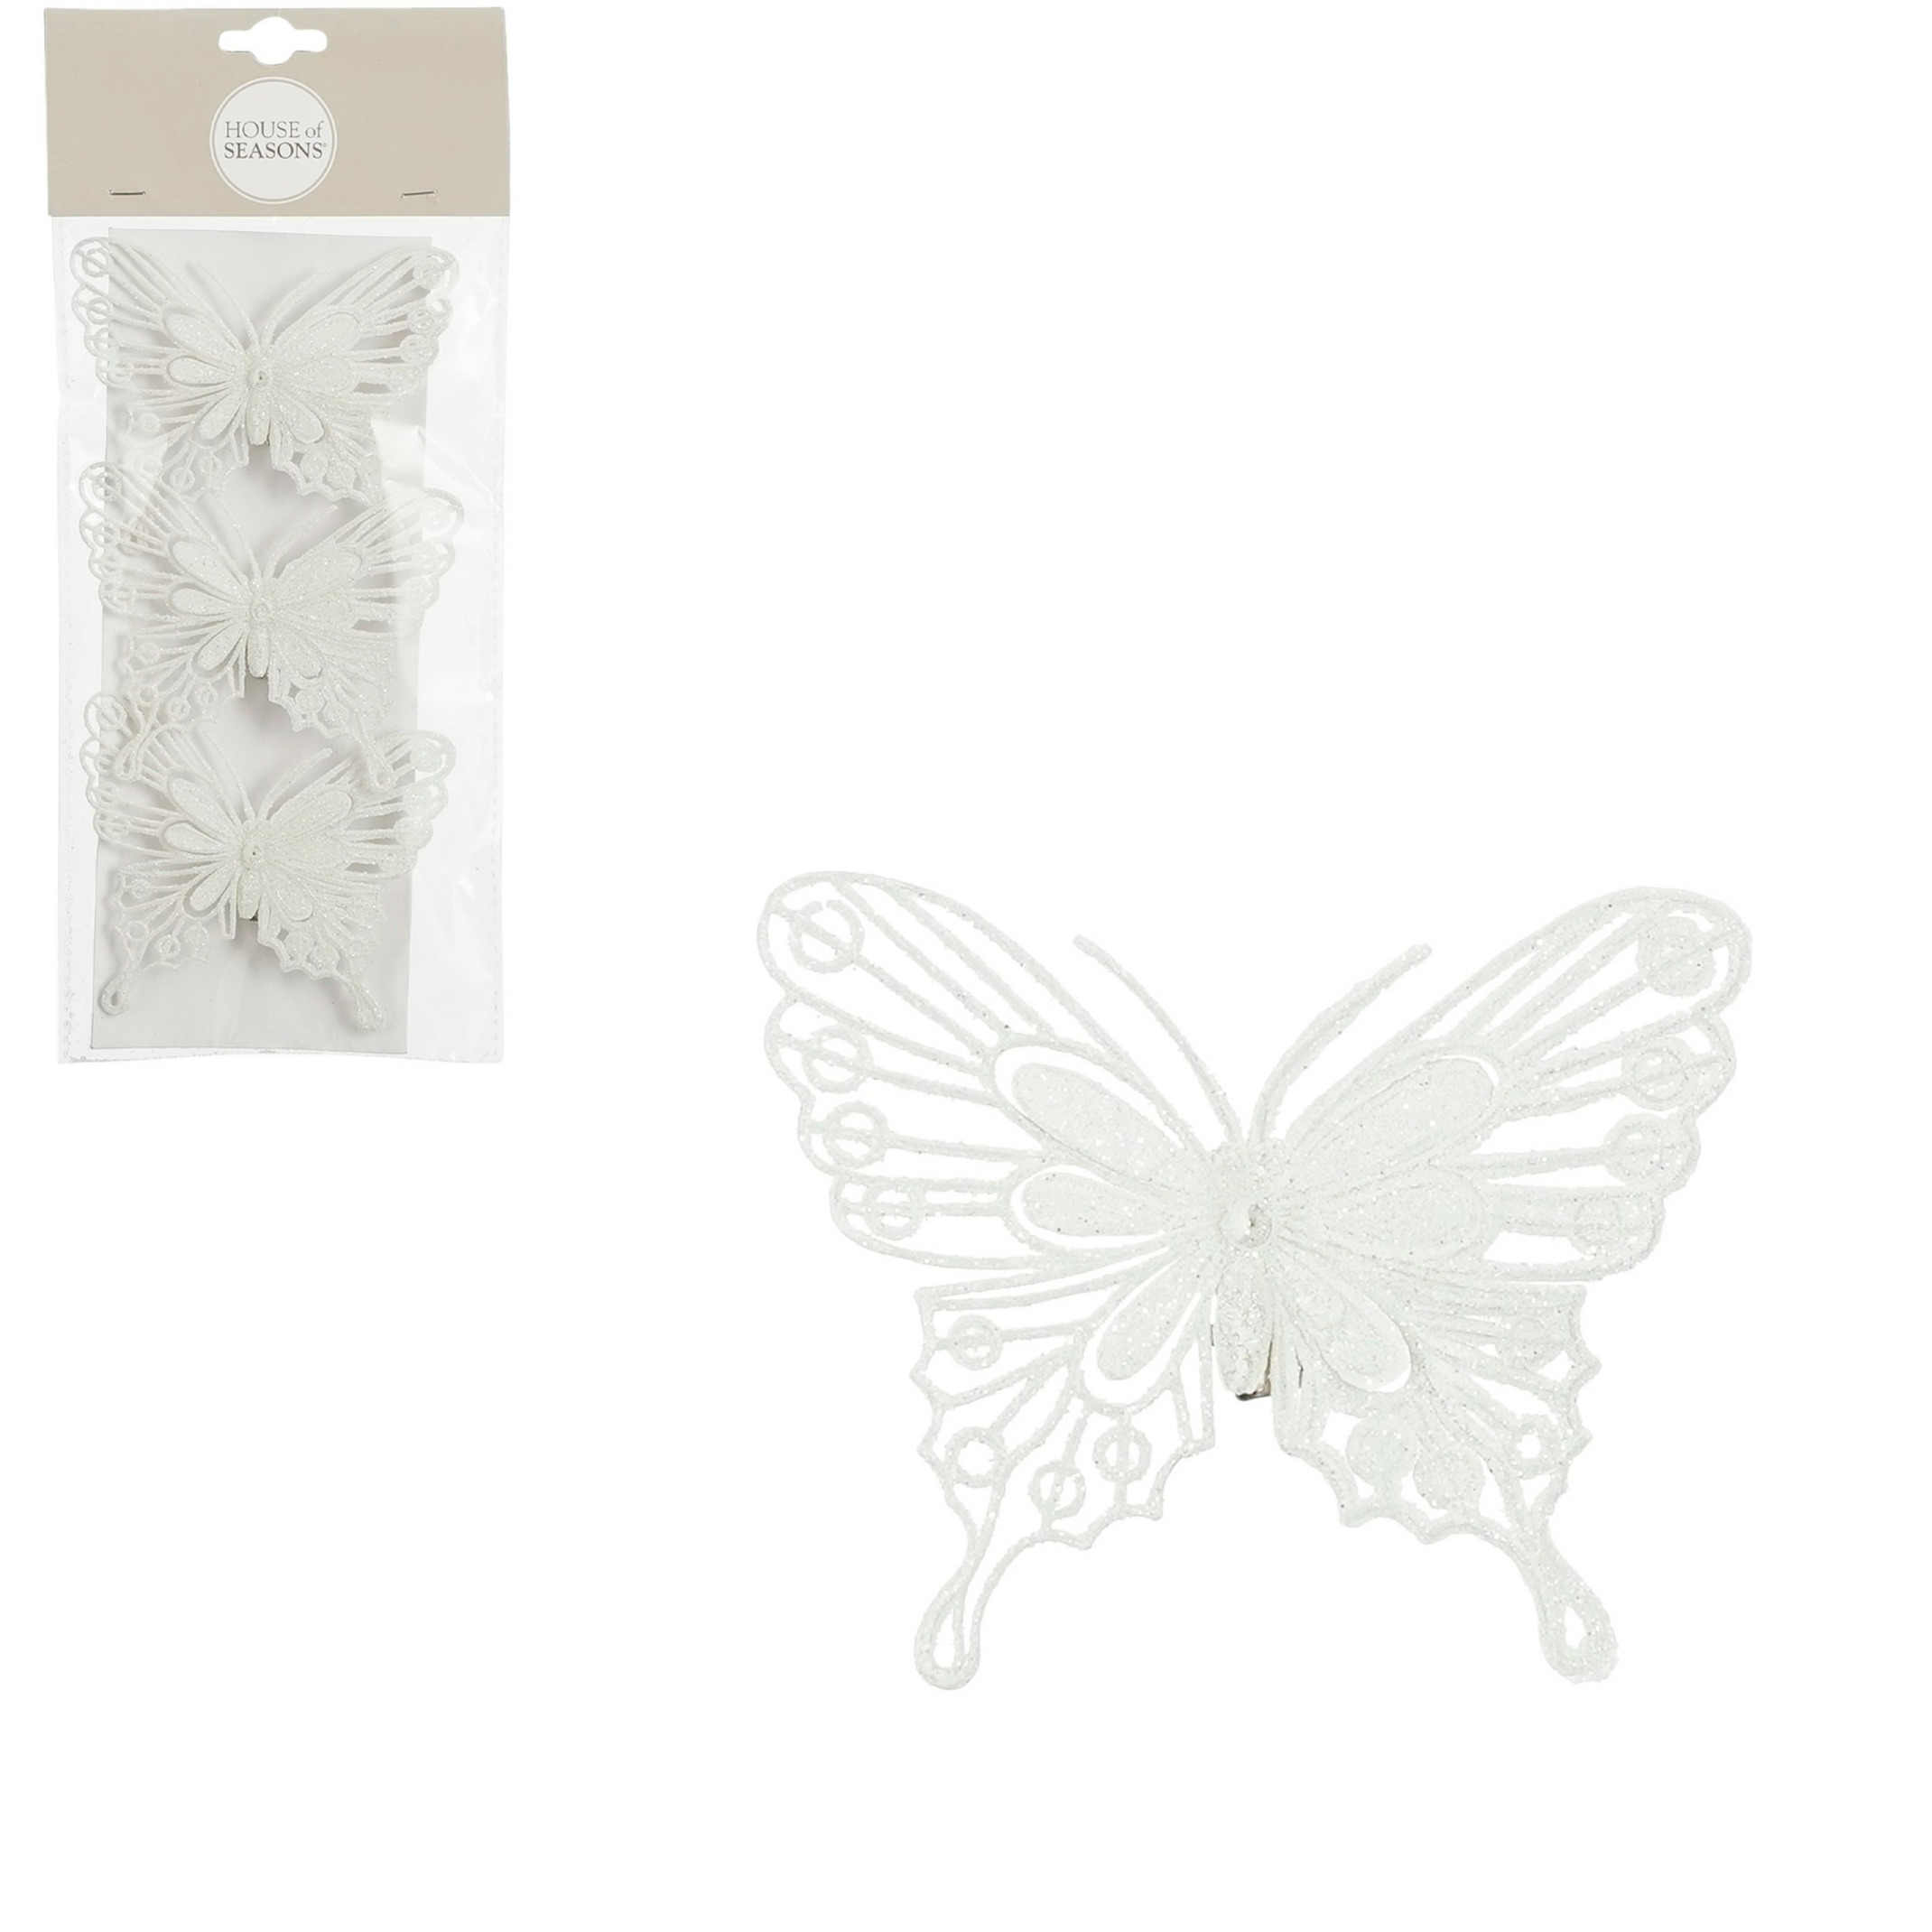 House of Seasons vlinders op clip - 3x stuks - wit glitter - 10 cm